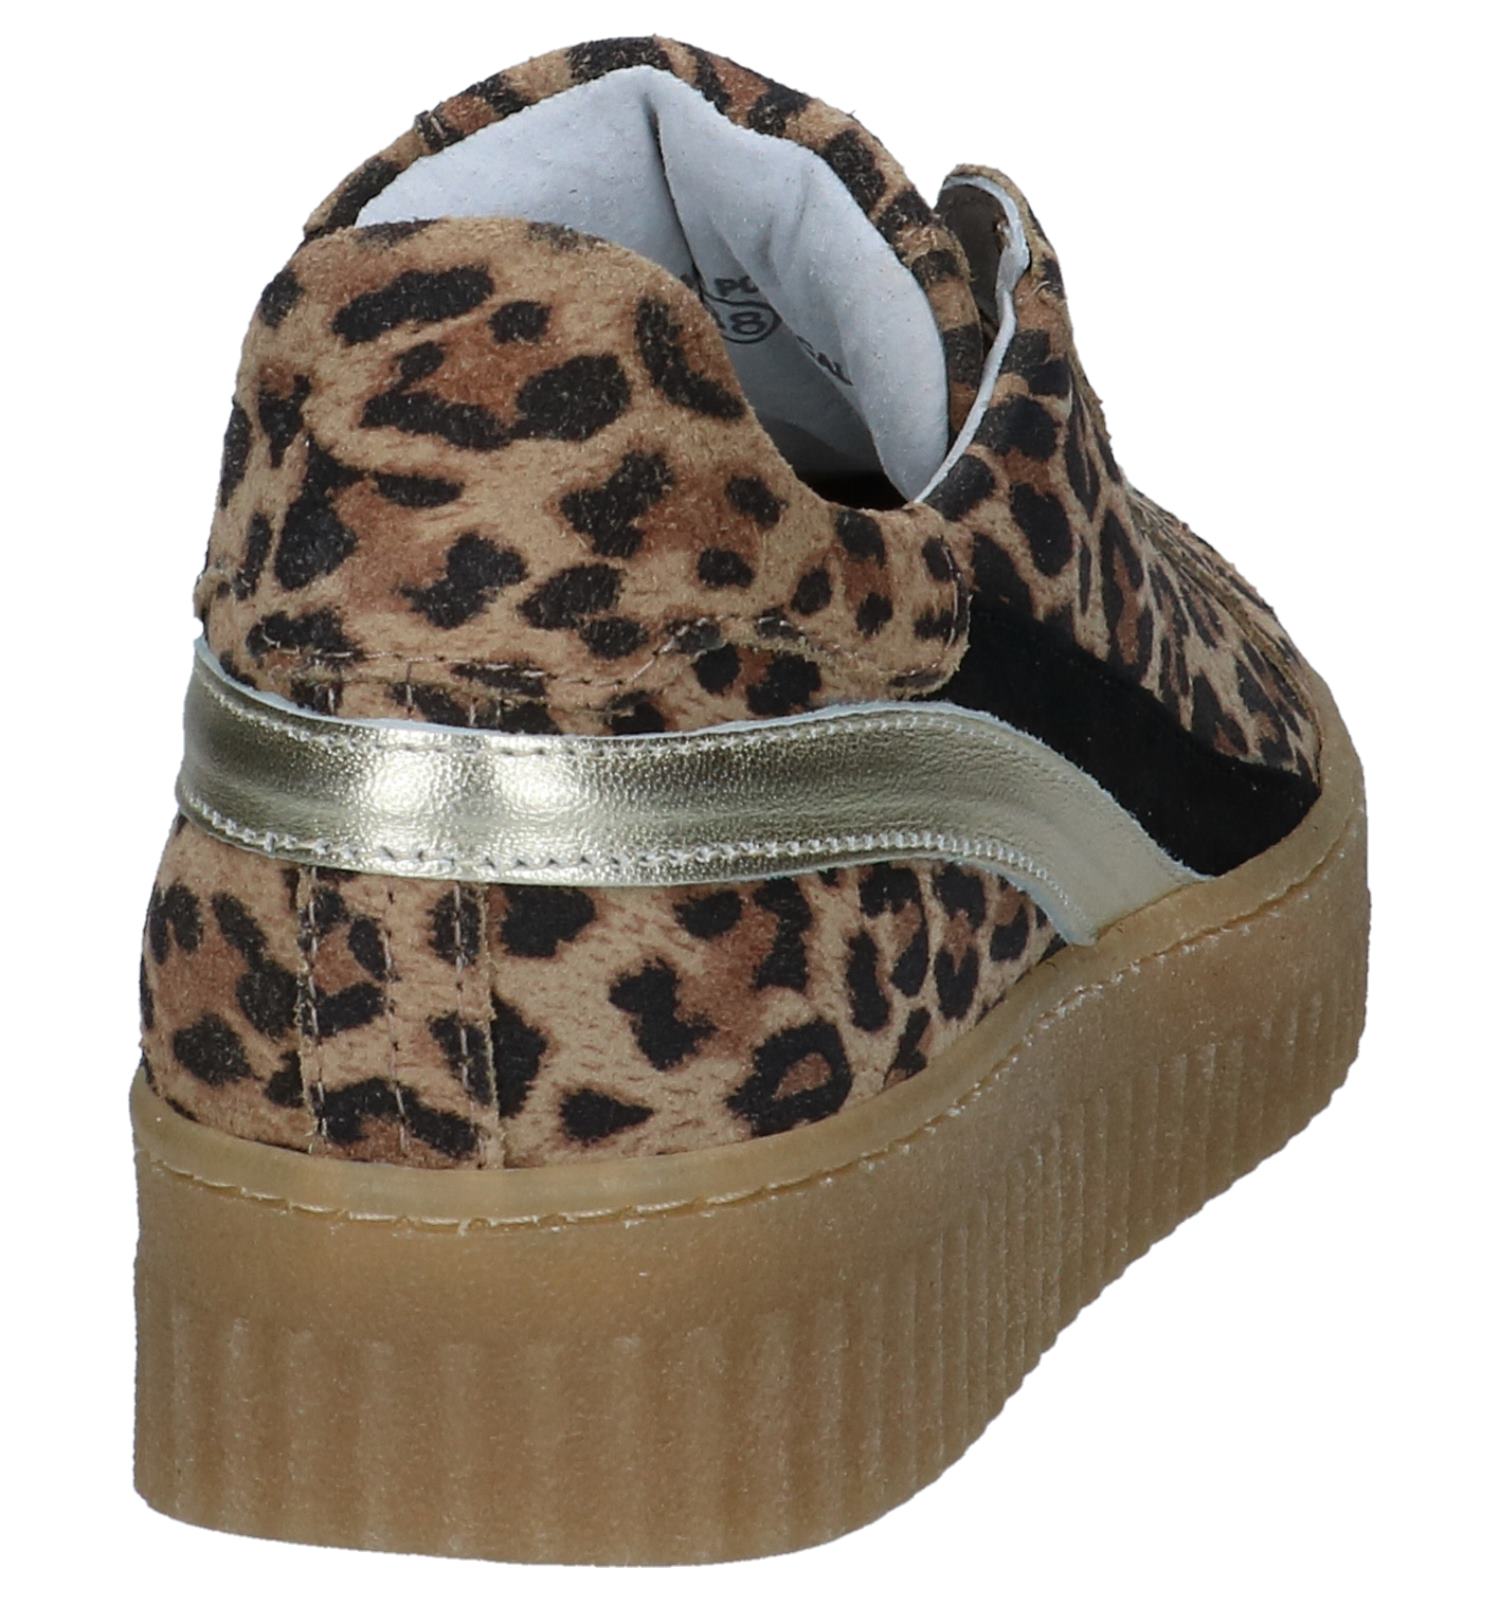 Hedendaags Bruine Shoecolate Sneakers met Luipaardprint | TORFS.BE | Gratis QU-92